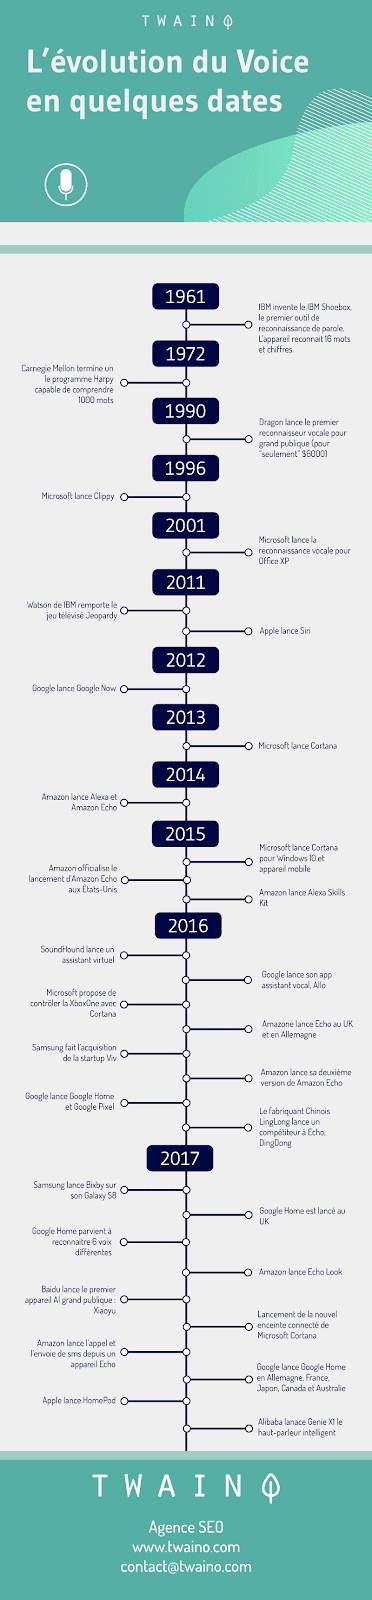 Evolution du Voice en quelques dates infographie